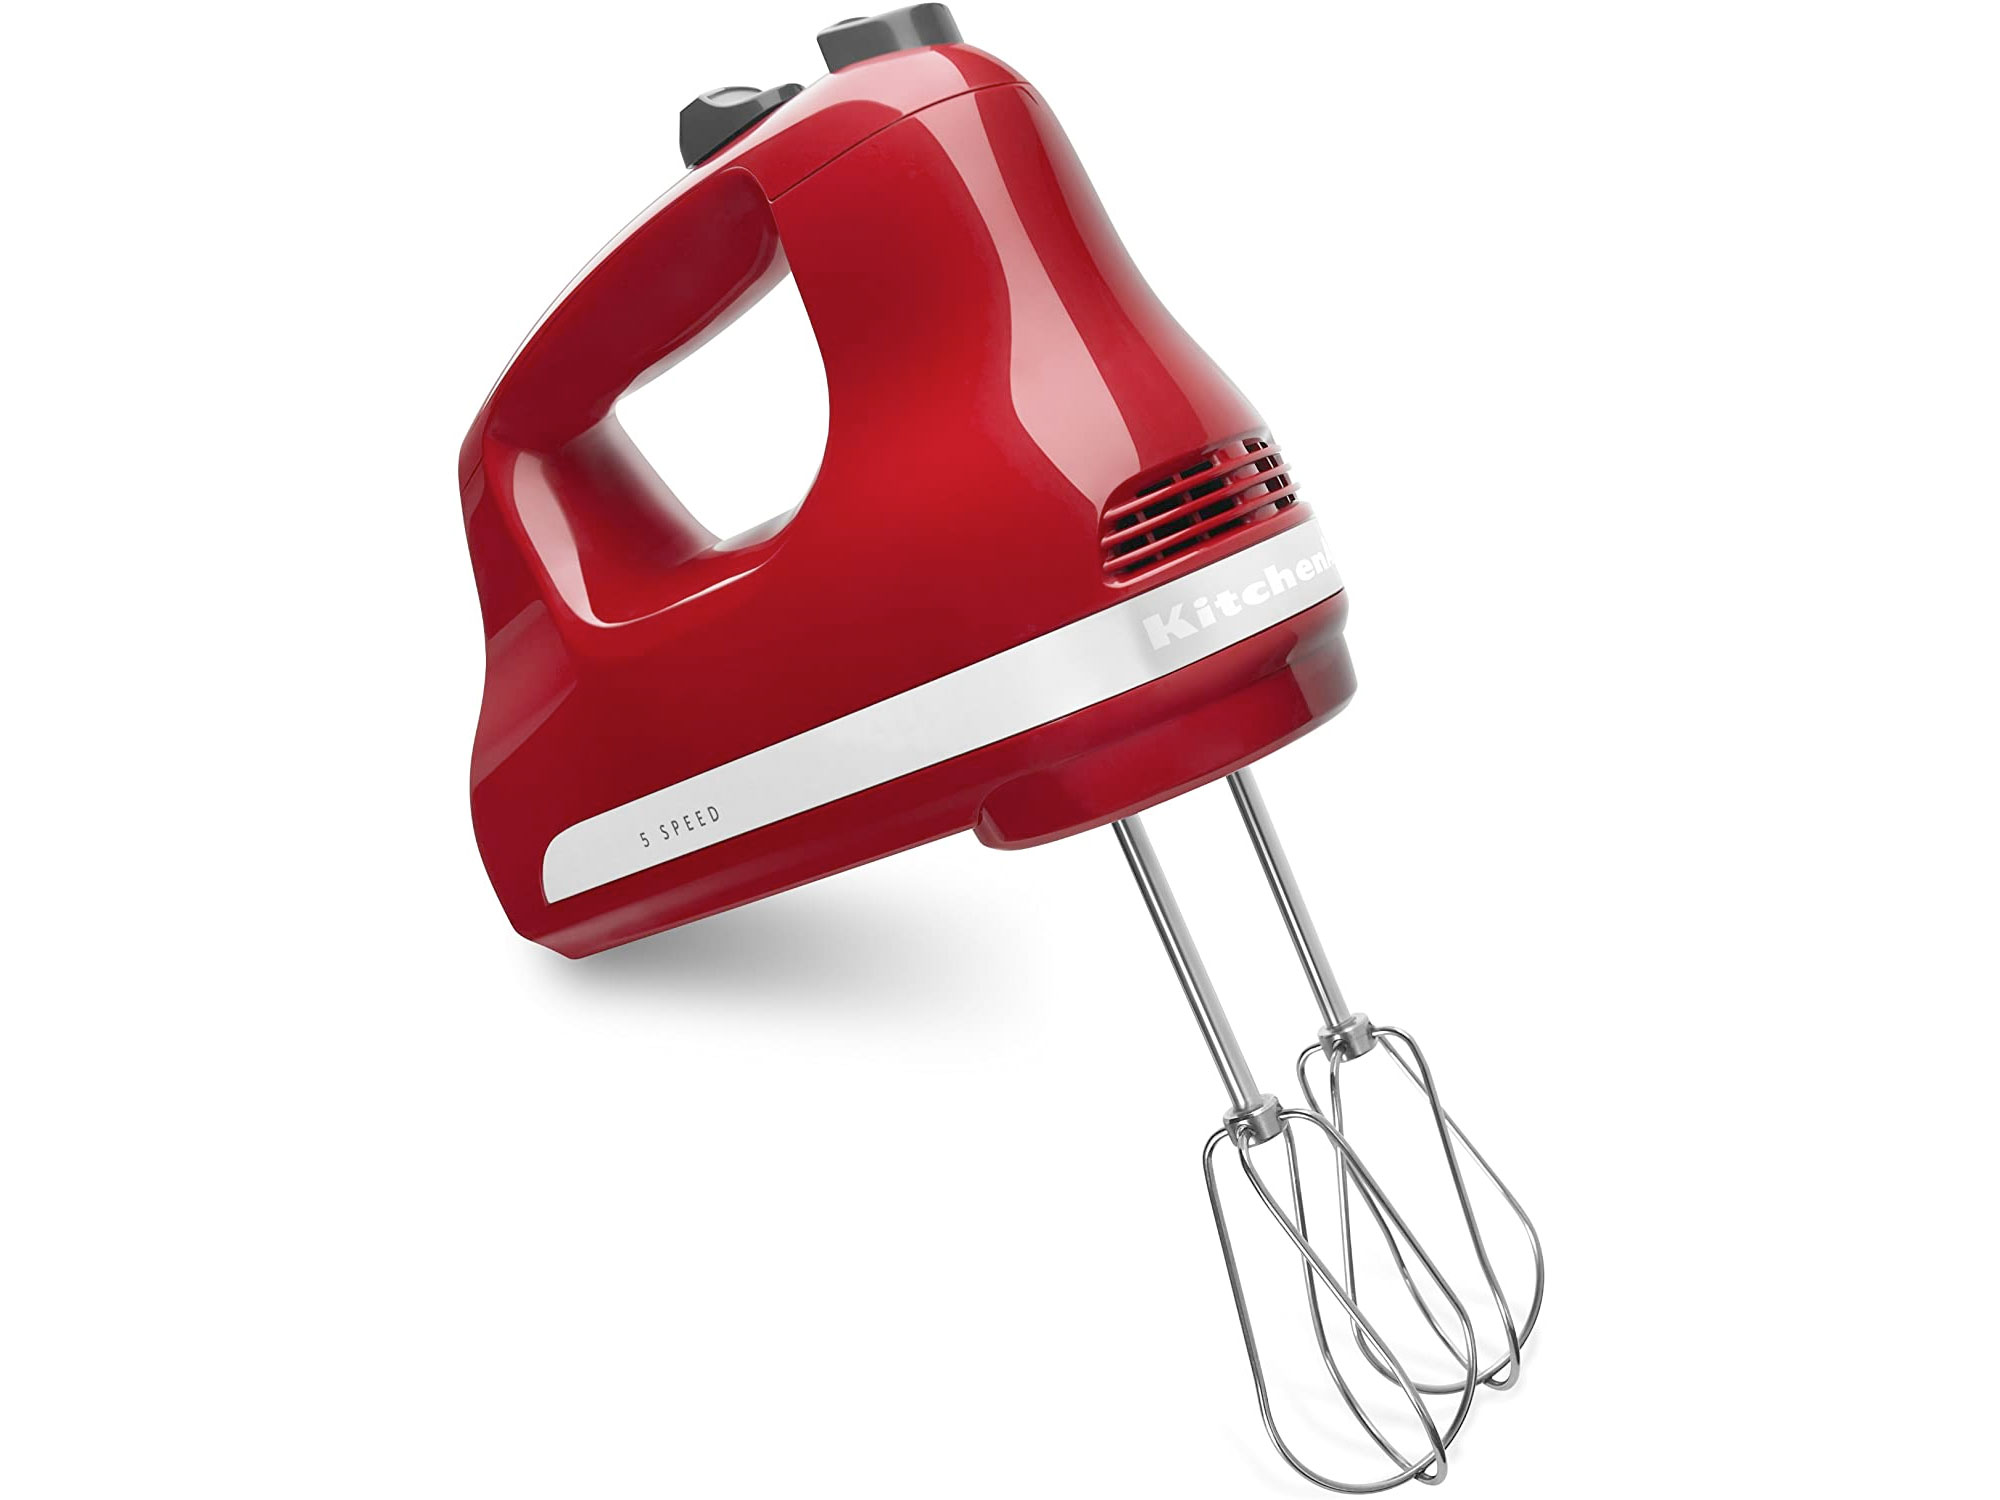 Amazon：KitchenAid 5-Speed Hand Mixer只卖$49.98